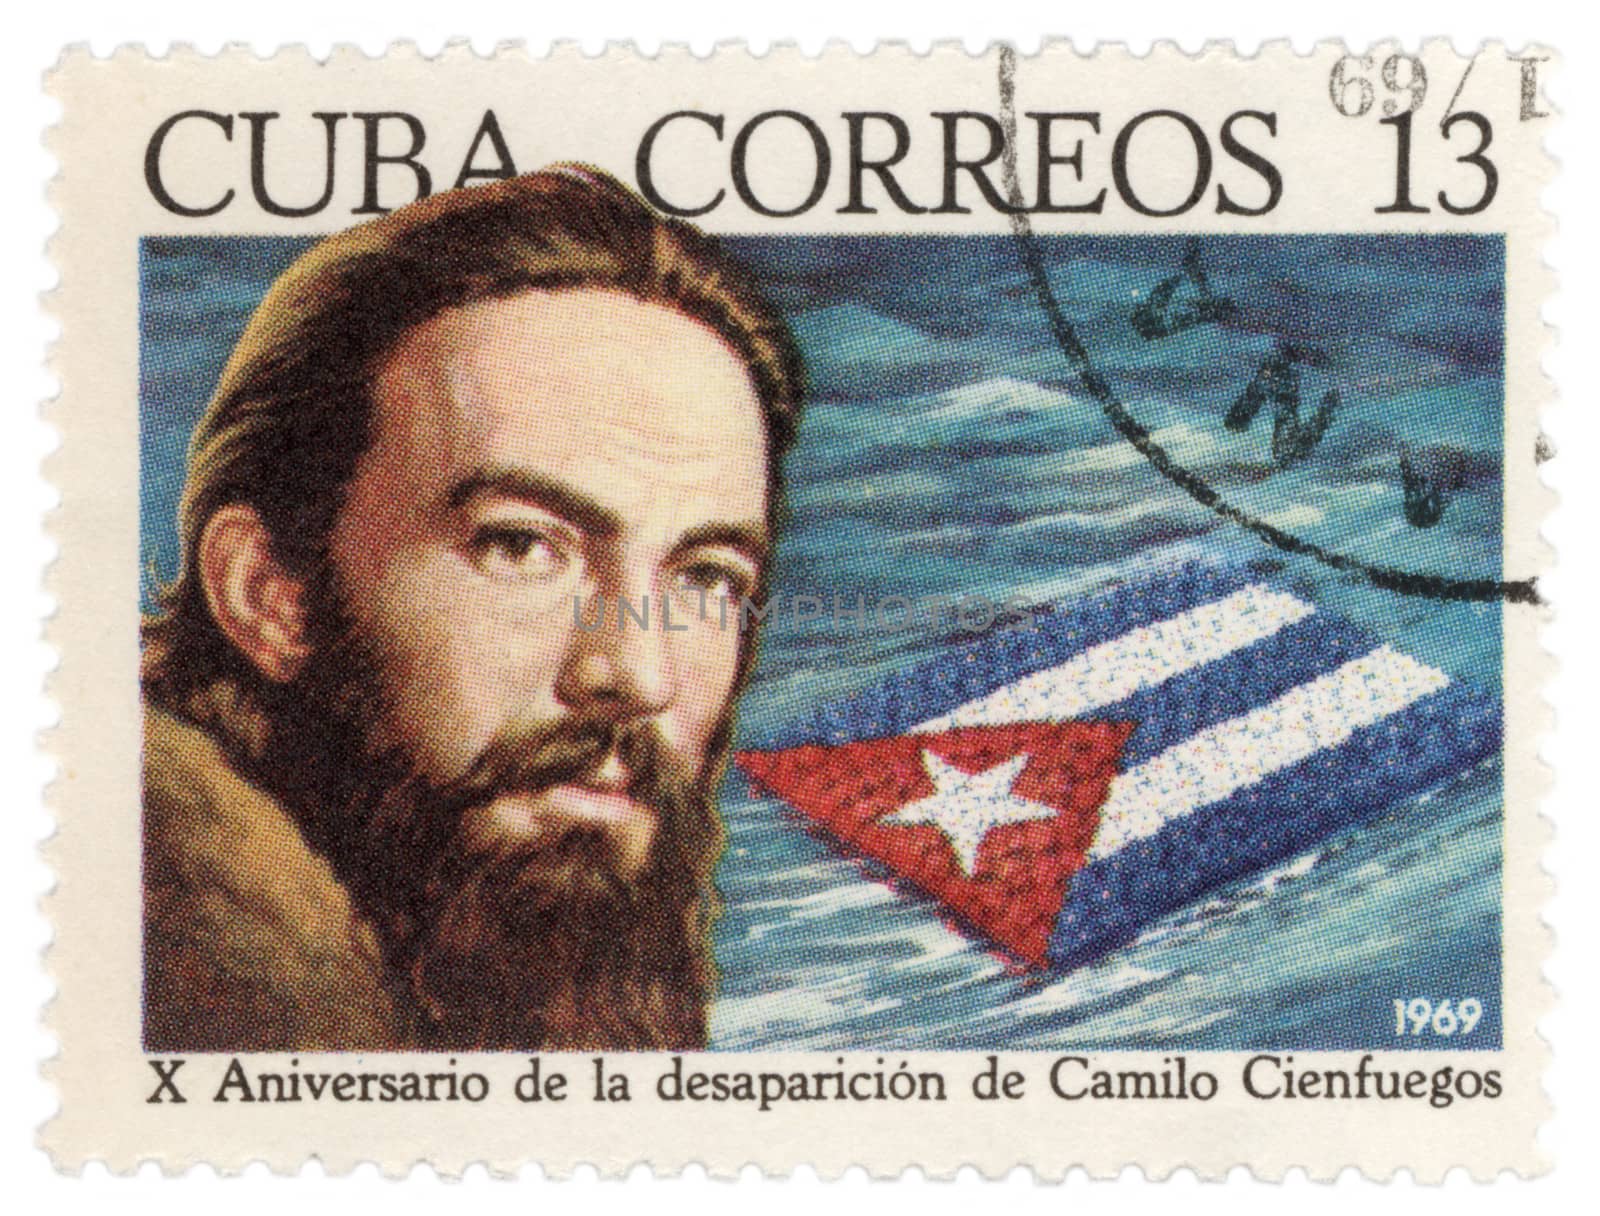 CUBA - CIRCA 1969: post stamp printed in Cuba shows portrait of Cuban revolutionary Camilo Cienfuegos (1932-1959), circa 1969